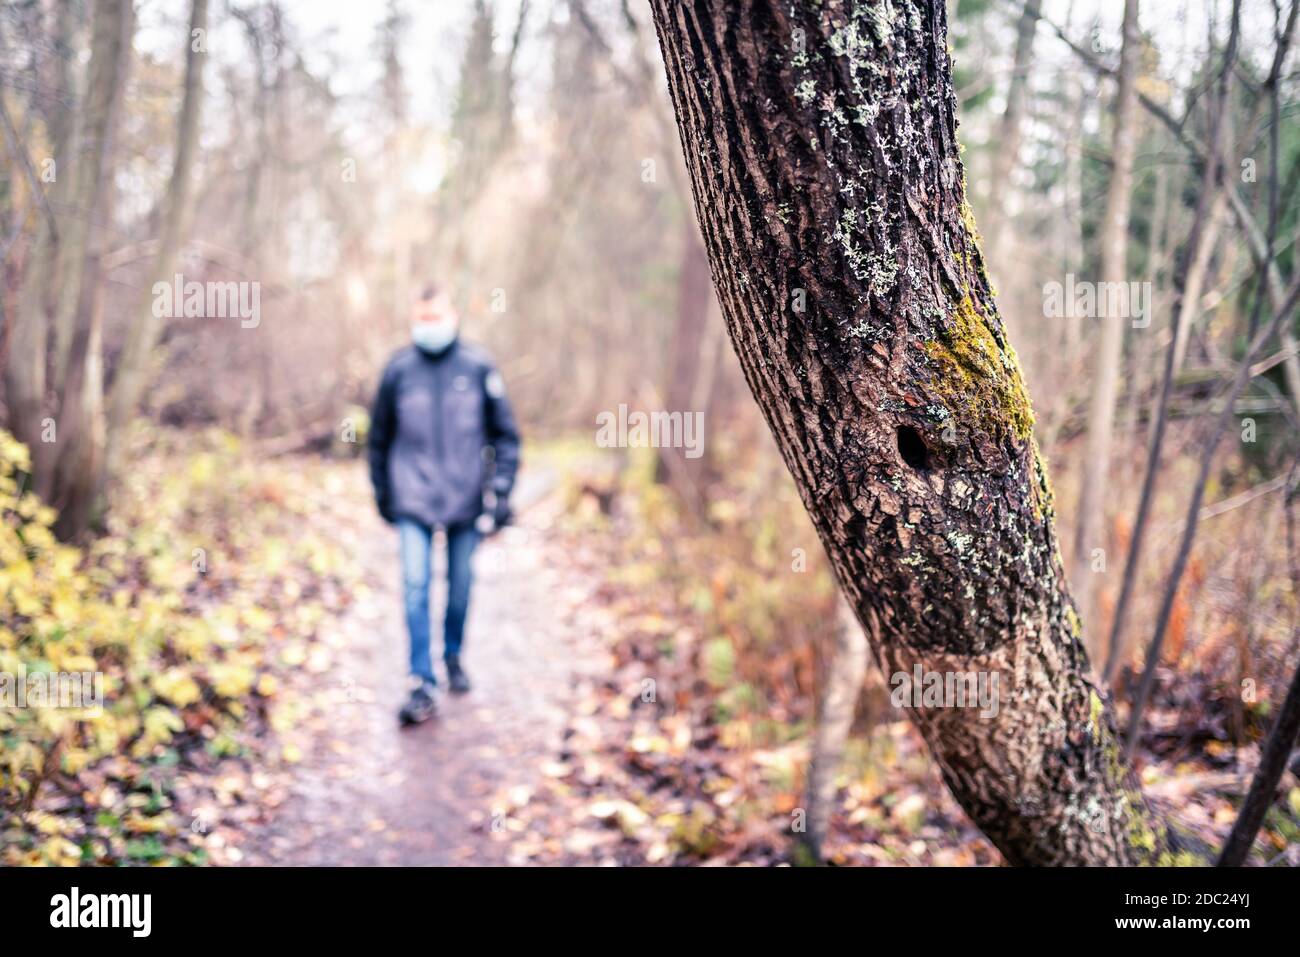 Corona dépression, anxiété, solitude et social distance concept. Seul homme triste marchant dans la forêt pendant l'isolement du coronavirus. Banque D'Images